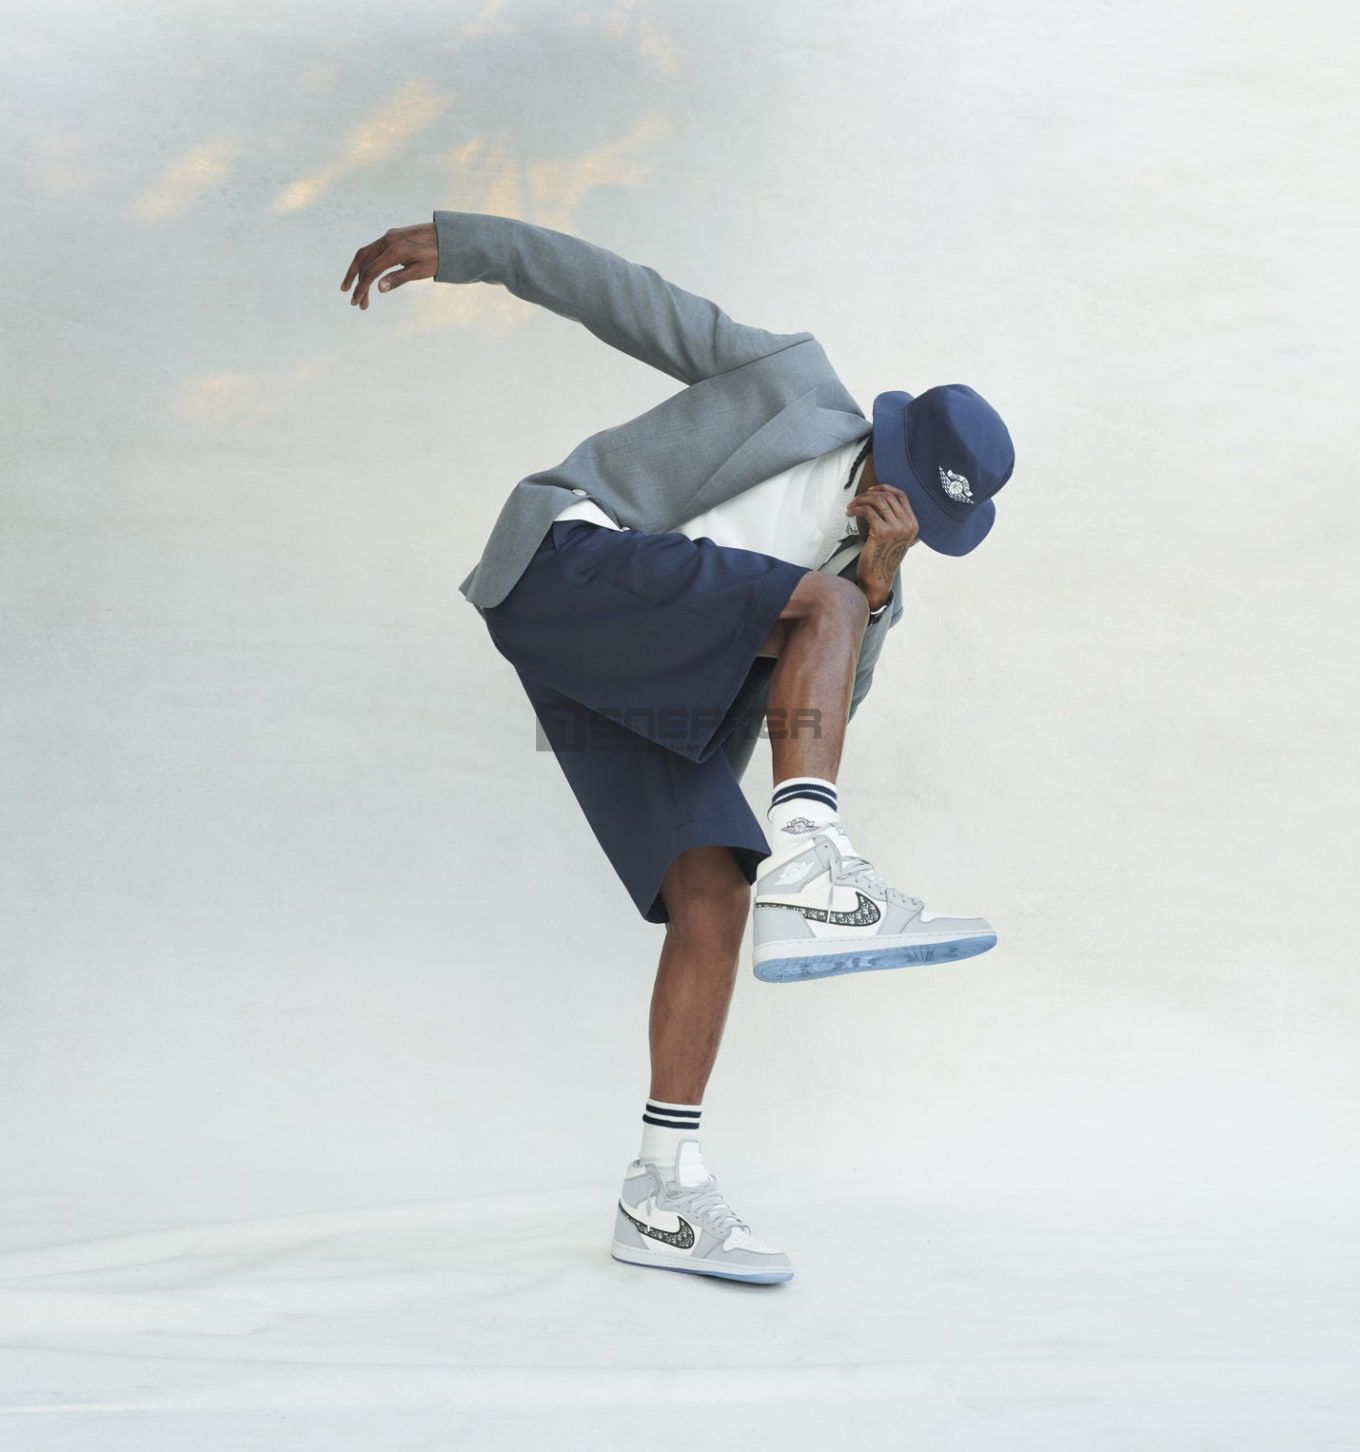 Giày Nike Air Jordan 1 Retro High Dior